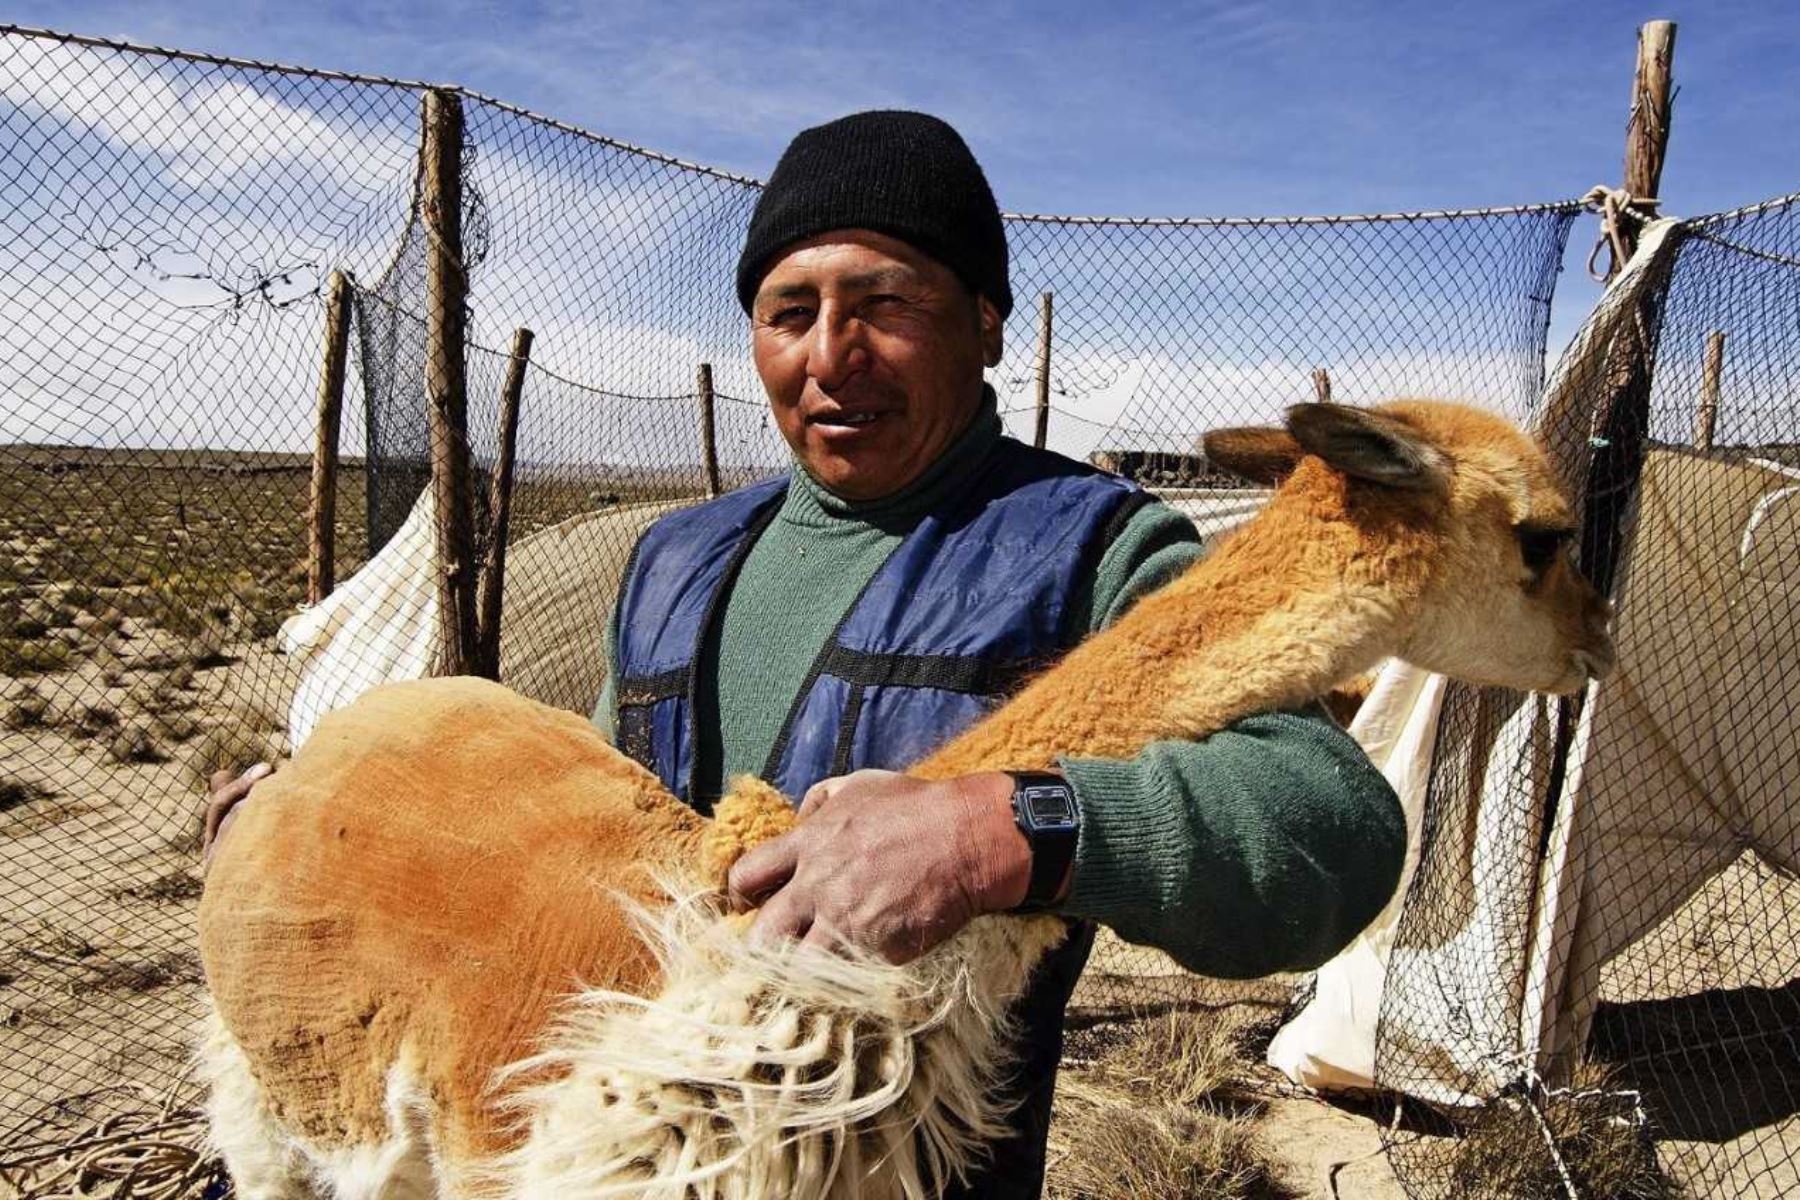 Los esfuerzos del Perú para evitar la extinción de la vicuña y el aprovechamiento sostenible de su valiosa fibra en beneficio de las comunidades campesinas dedicadas a la crianza de este camélido sudamericano, son destacados por la publicación especializada en turismo de la cadena internacional de noticias británica BBC. ANDINA/Difusión